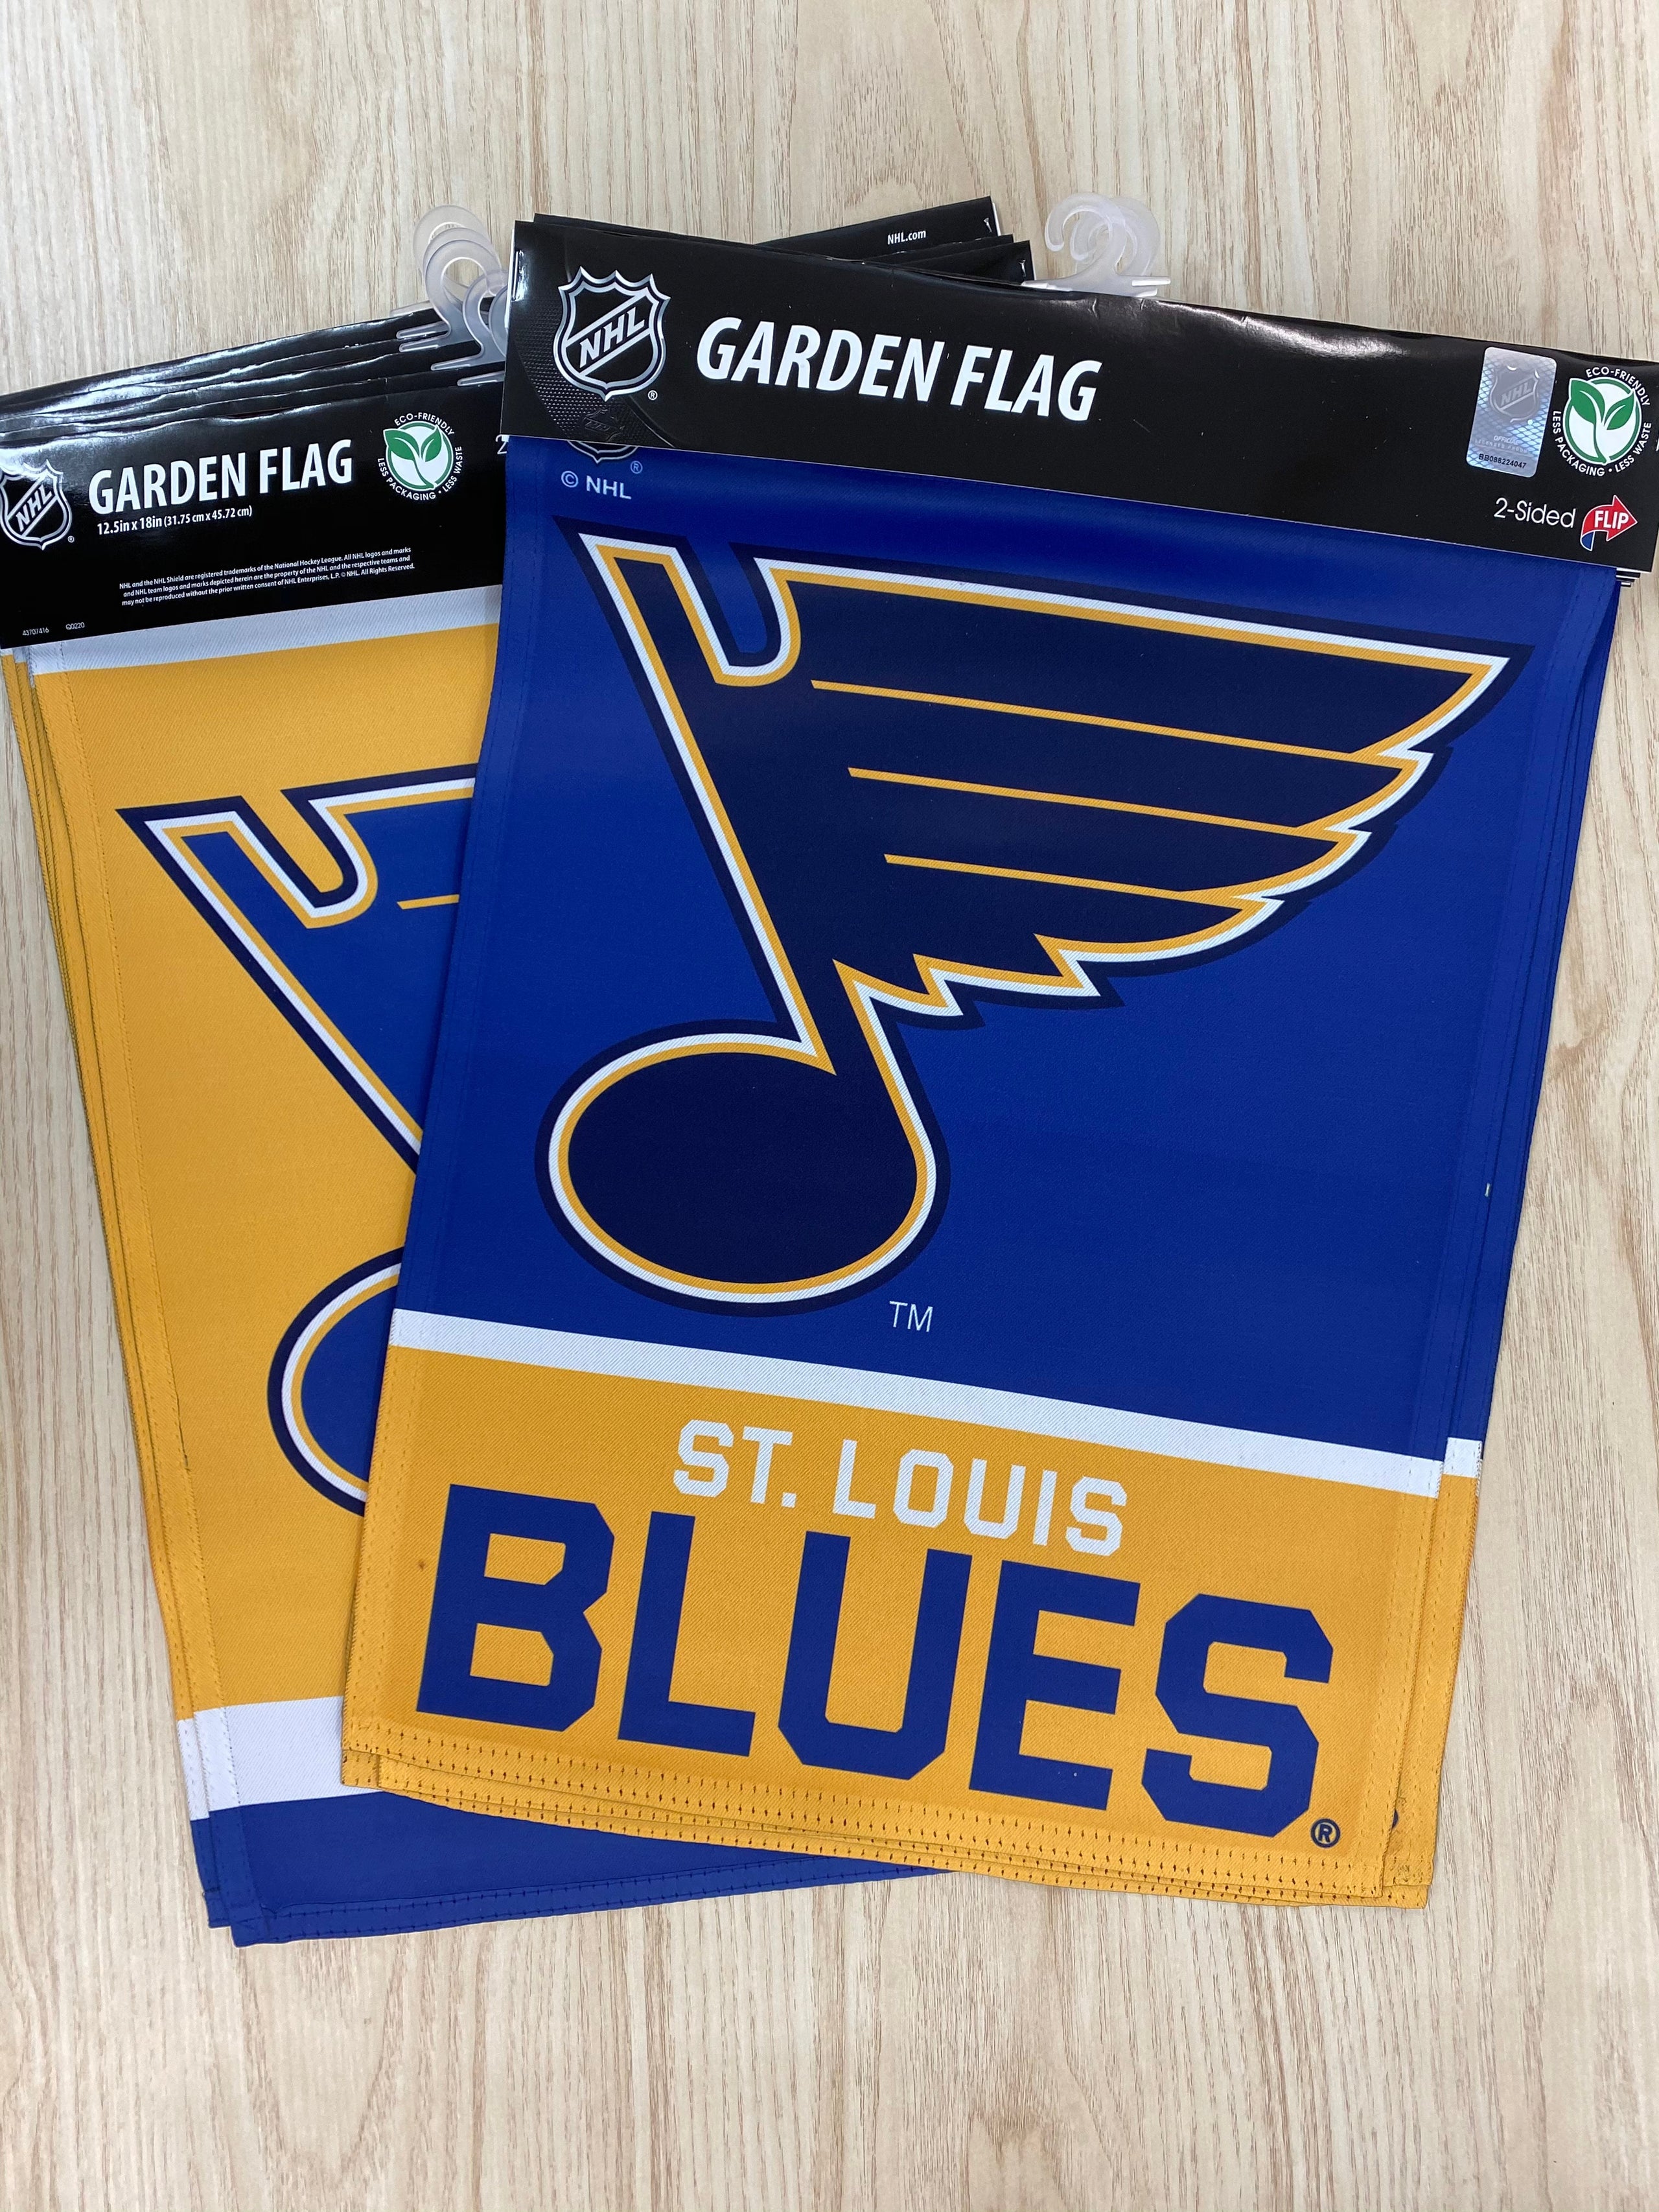 St. Louis Blues Embellished Garden Flag